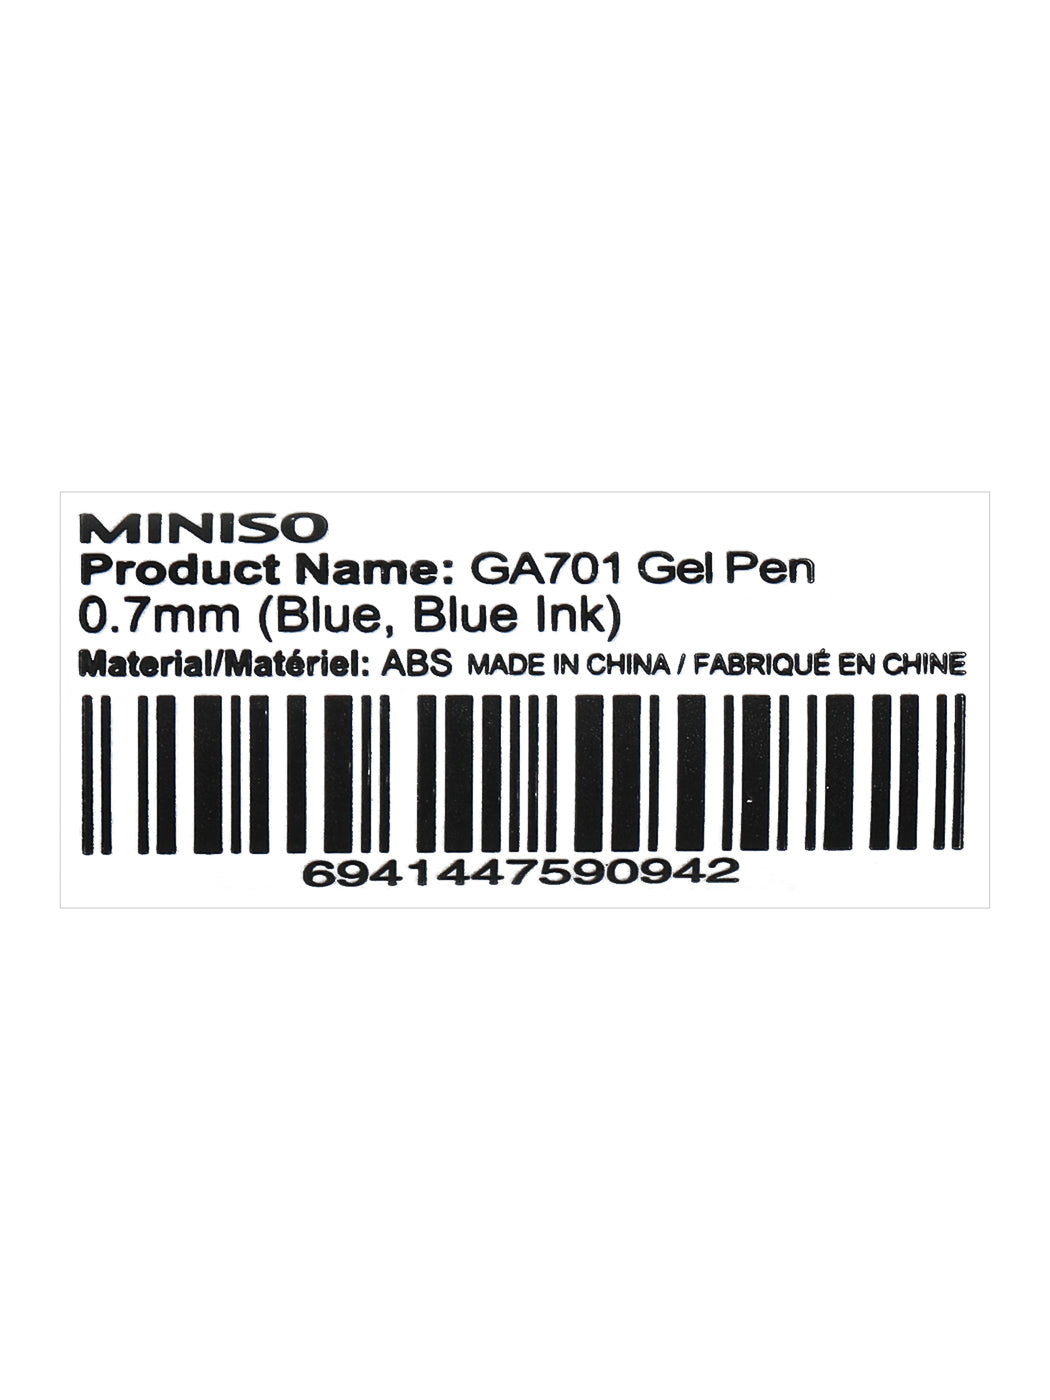 MINISO GA701 GEL PEN 0.7MM(BLUE,BLUE INK) 2010303712126 PEN